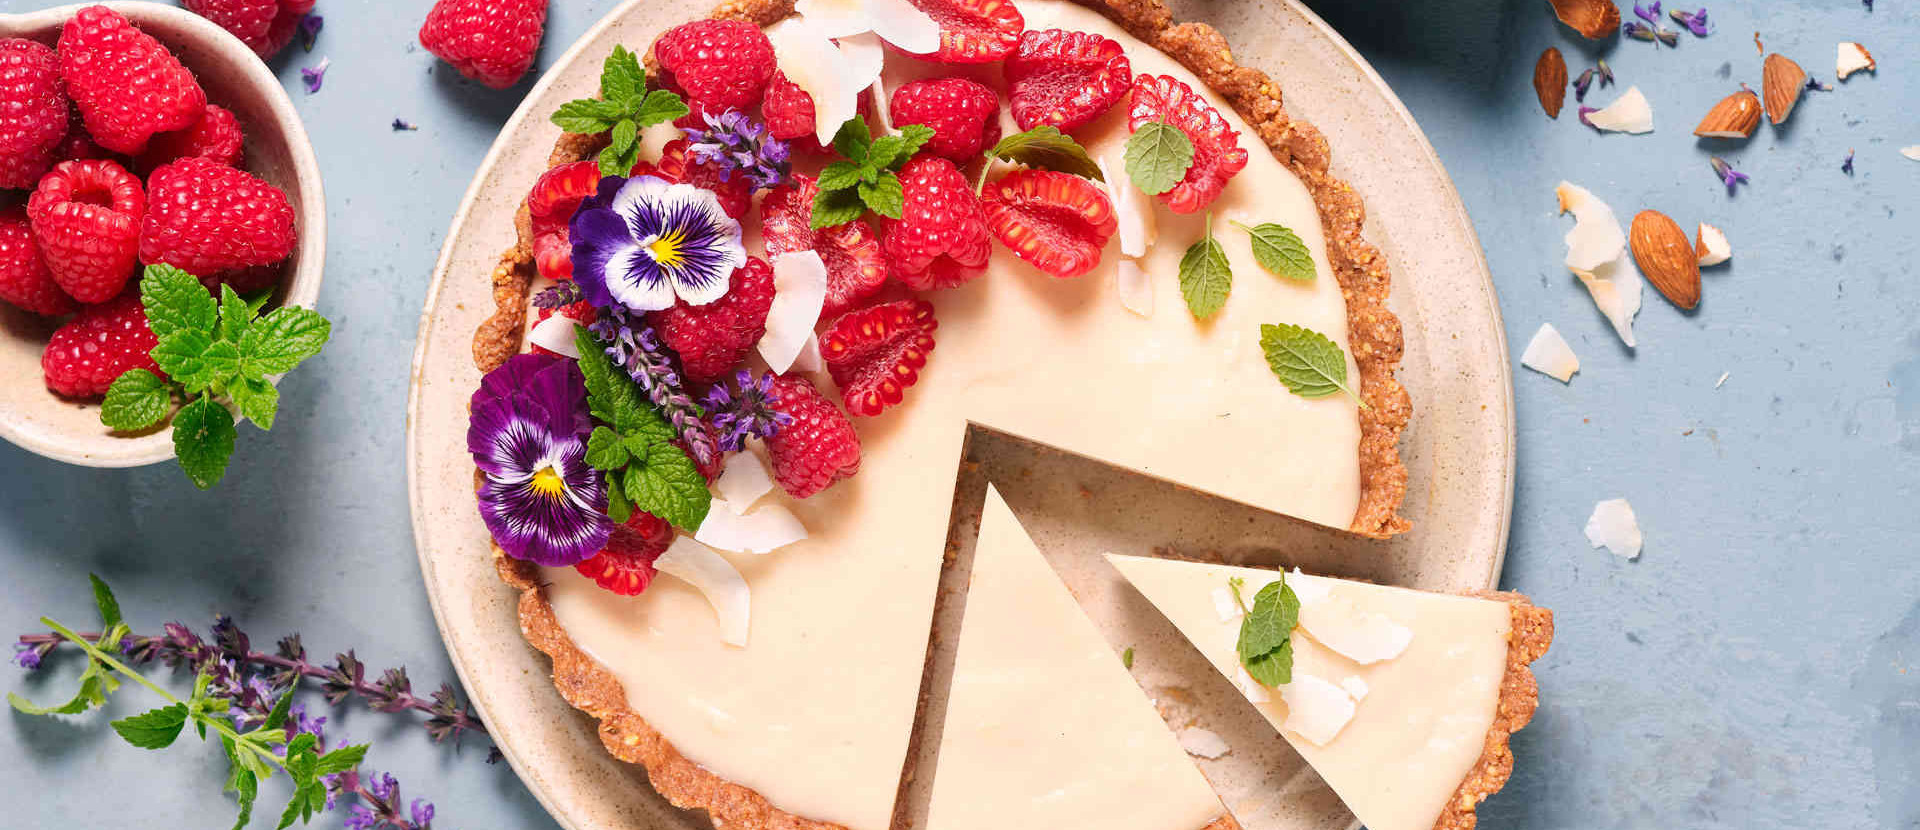 veganer Kuchen als Tarte mit Himbeeren und lila Blüten dekoriert vor einem hellblauen Hintergrund